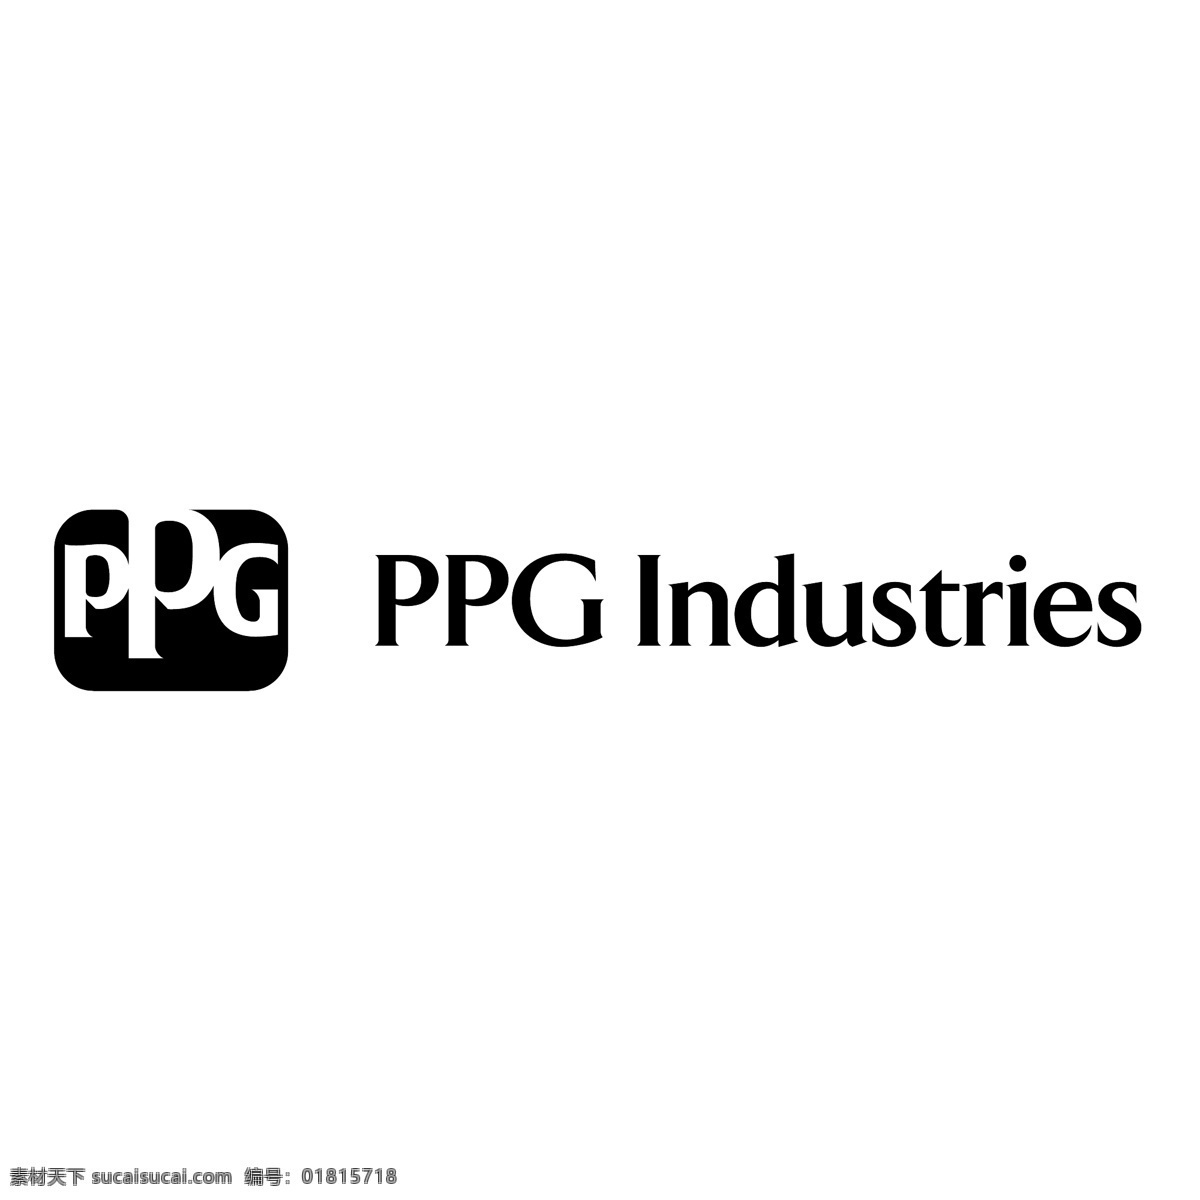 ppg 工业 公司 免费 设计行业 行业 自由 ppg工业 产业 载体 矢量 下载行业 图形